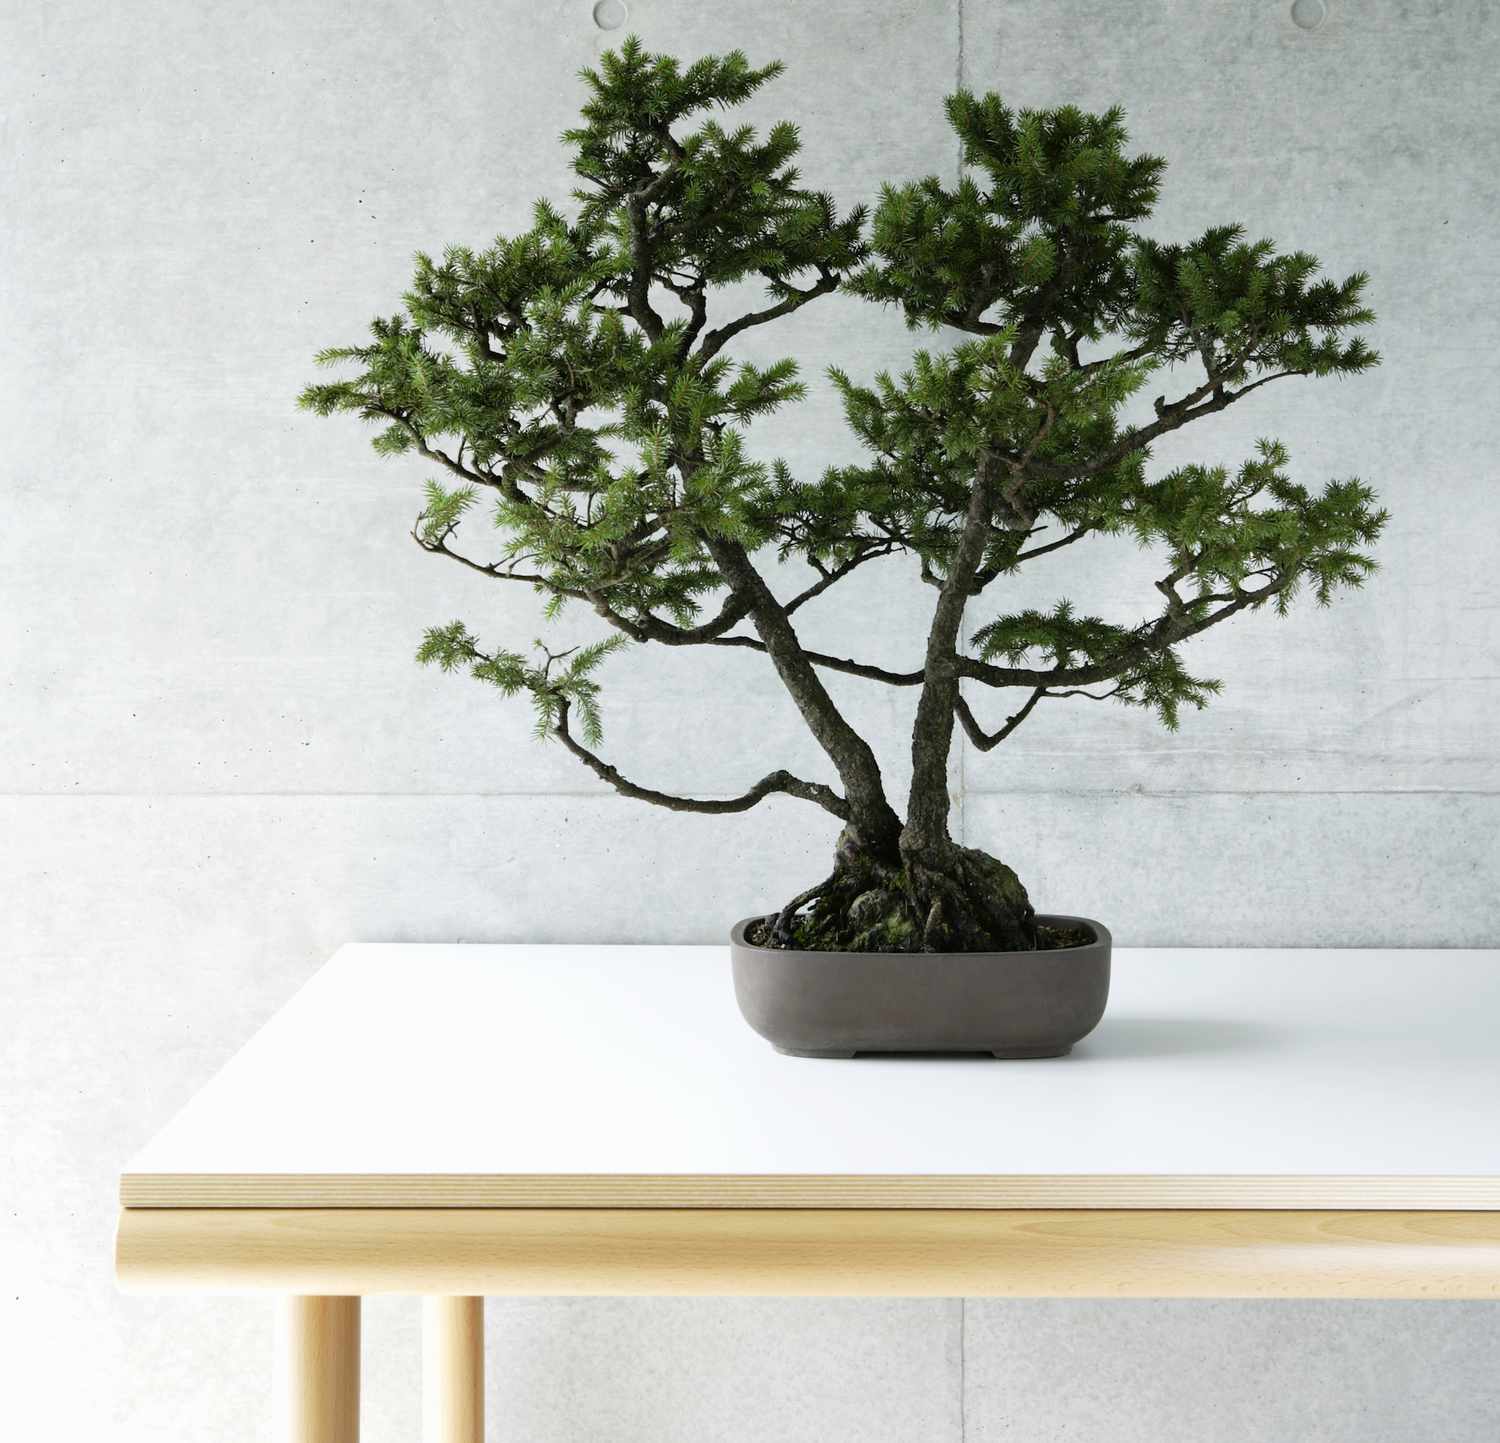 Bonsai-Baum in einem Topf auf einem weißen Tisch.